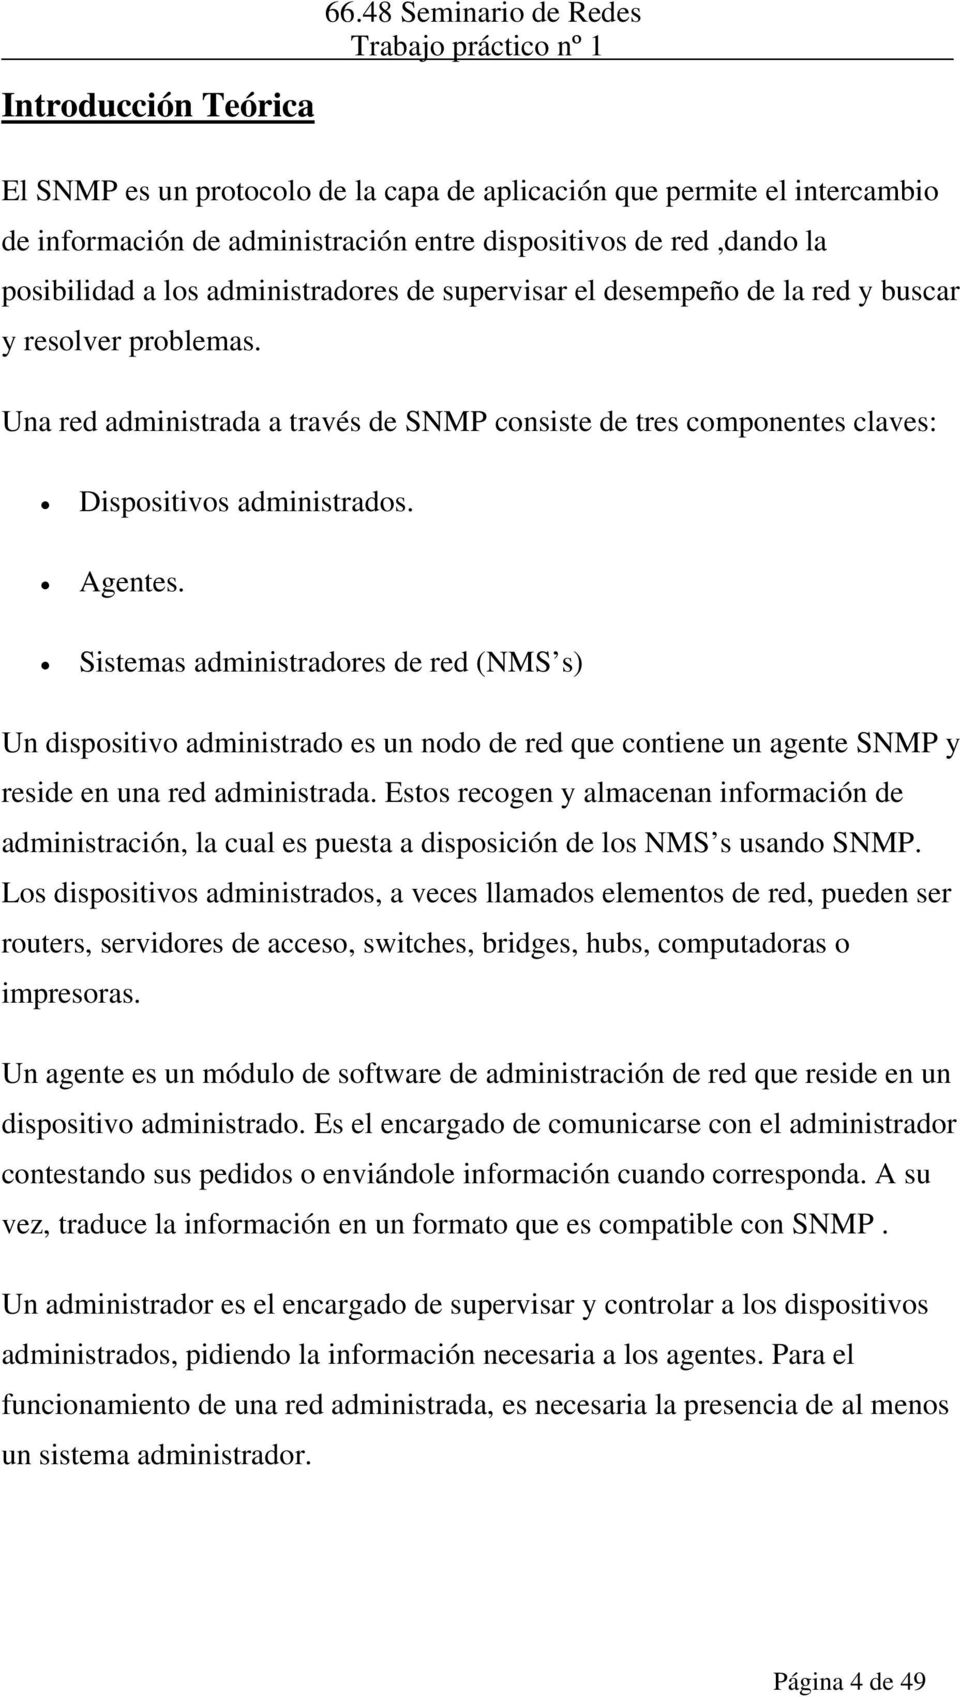 Sistemas administradores de red (NMS s) Un dispositivo administrado es un nodo de red que contiene un agente SNMP y reside en una red administrada.